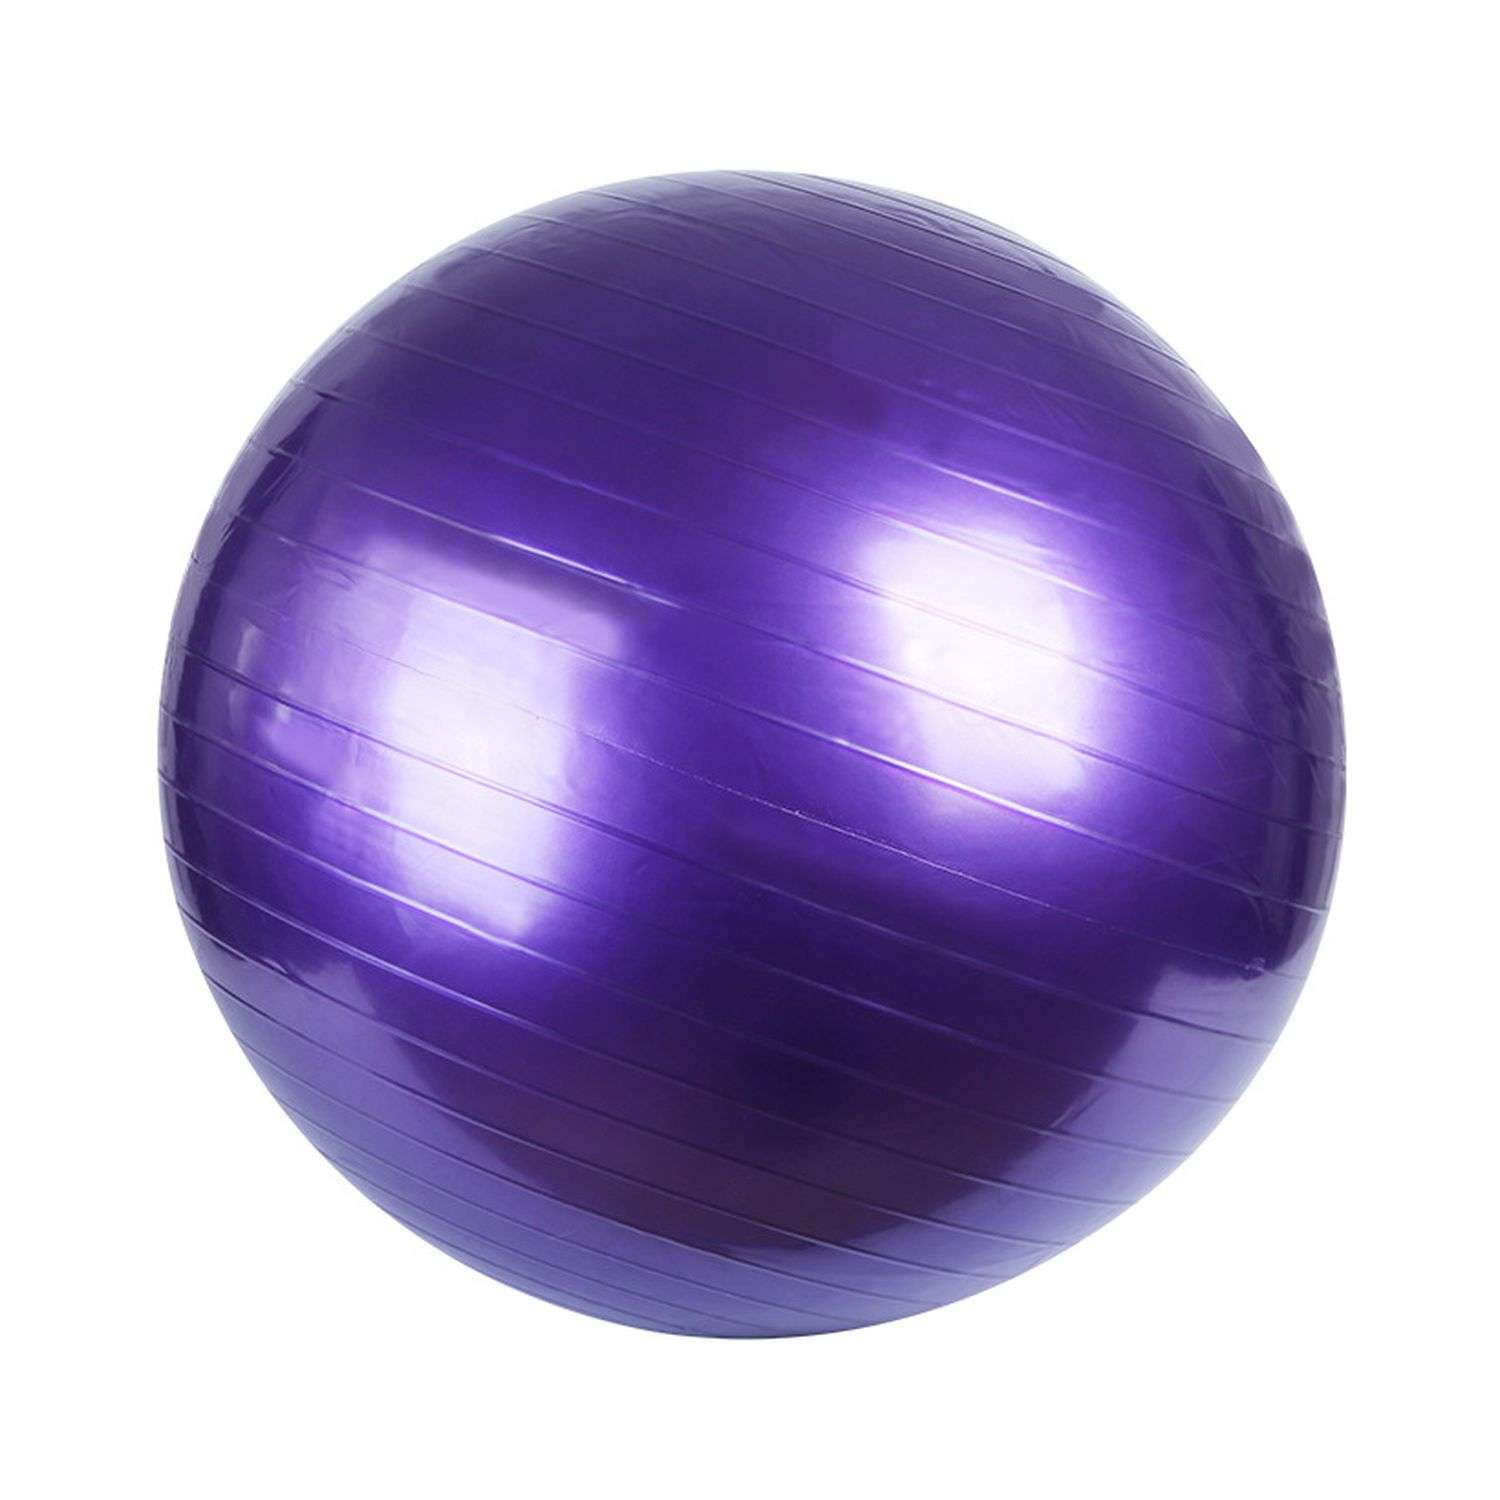 Фитбол Beroma с антивзрывным эффектом 65 см фиолетовый - фото 1